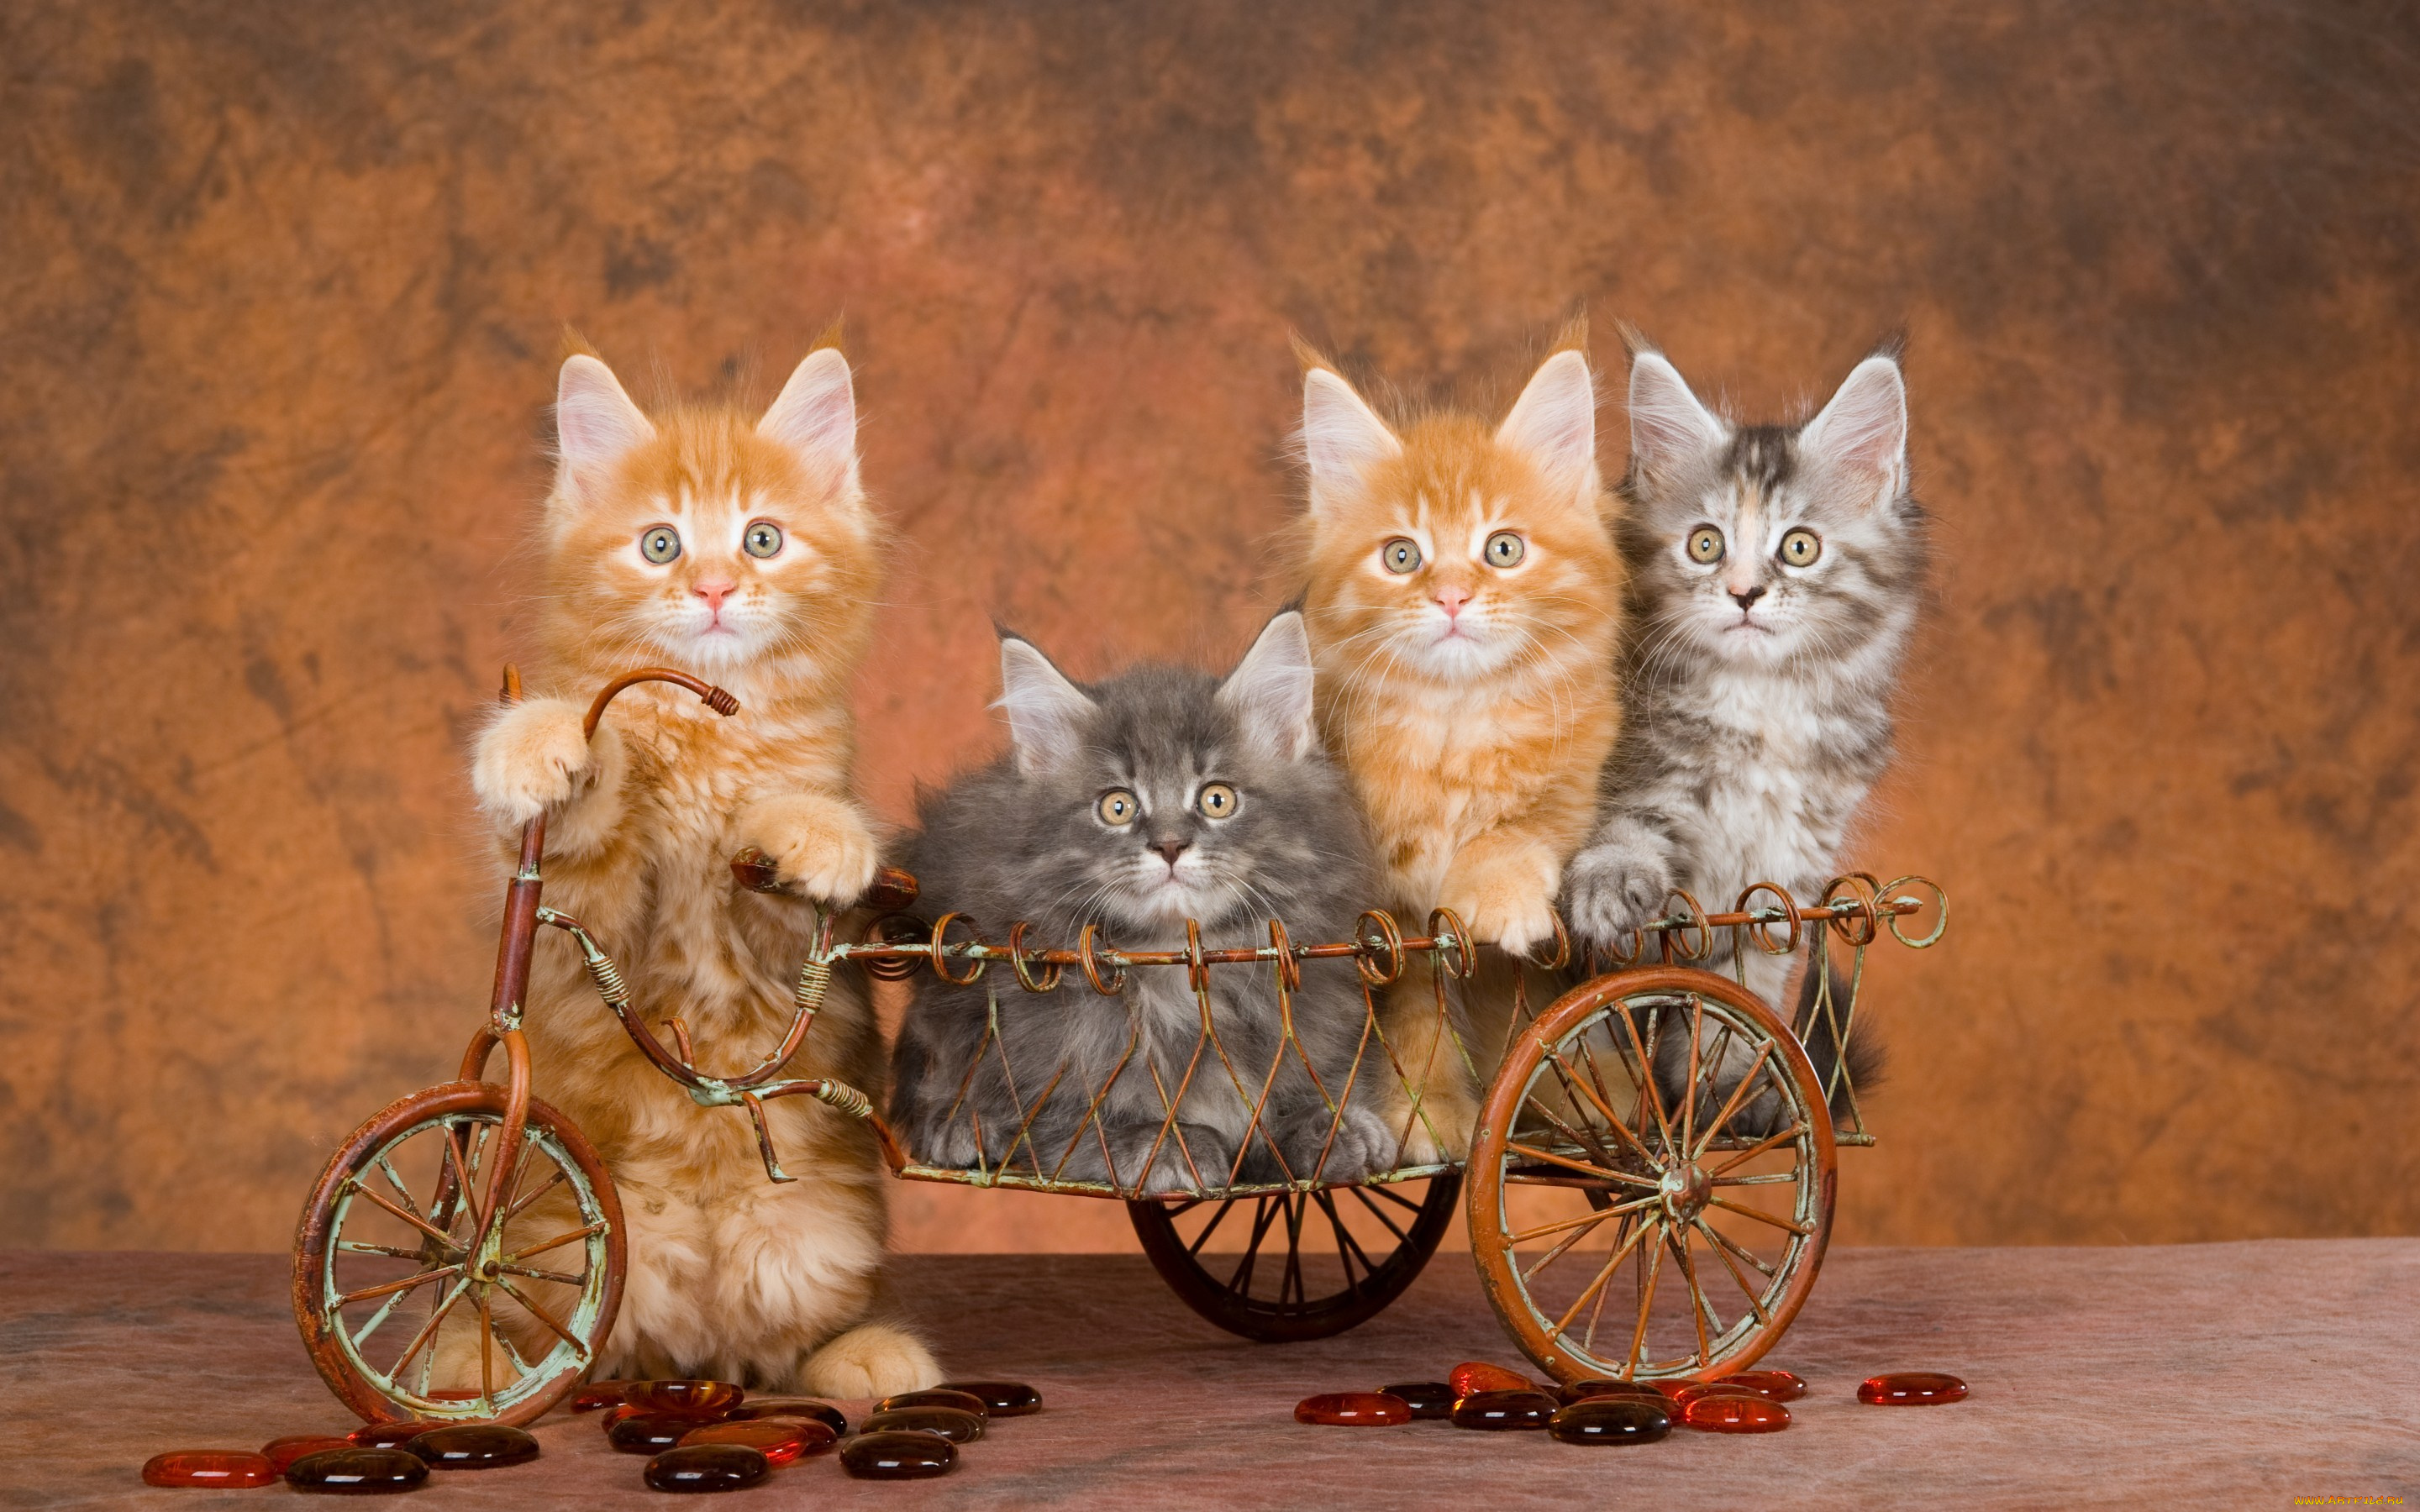 животные, коты, забавно, полосатые, серые, рыжие, велосипед, четыре, квартет, четверо, котята, коричневый, фон, игрушка, корзина, повозка